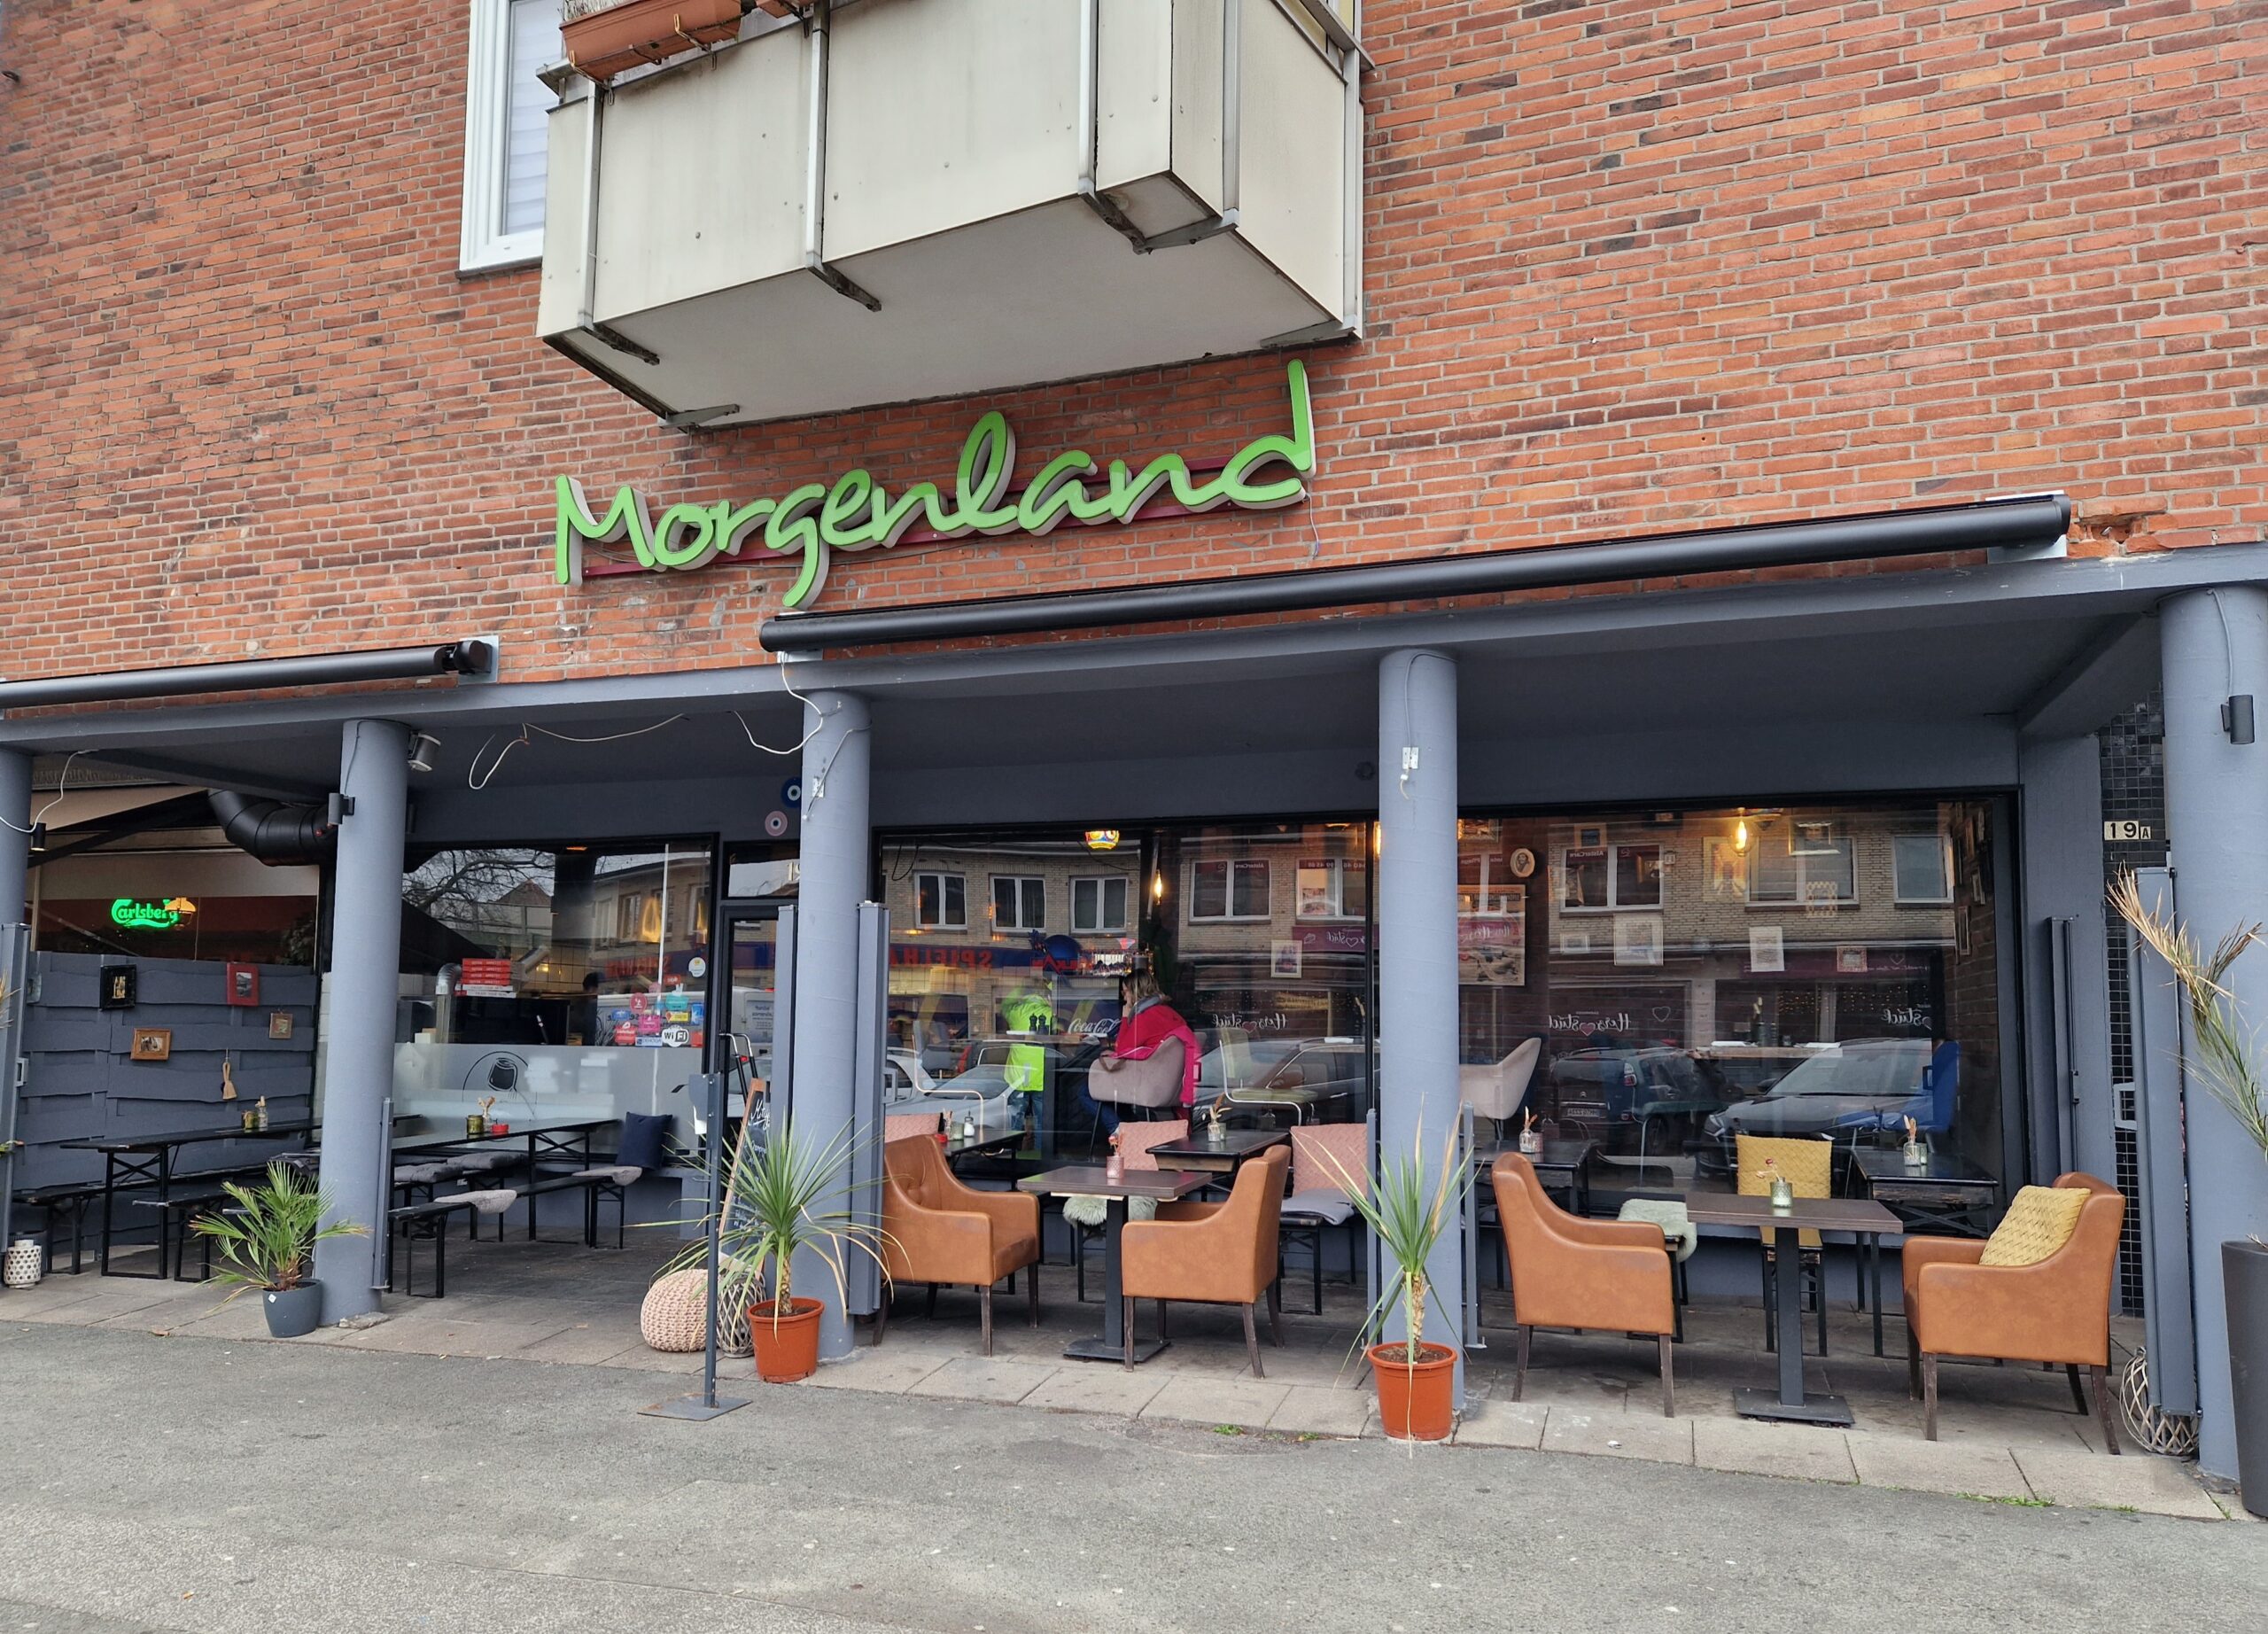 Wo mit Kindern in hamburg essen gehen - Orientalisch und kinderfreundlich essen im Morgenland in Hamburg